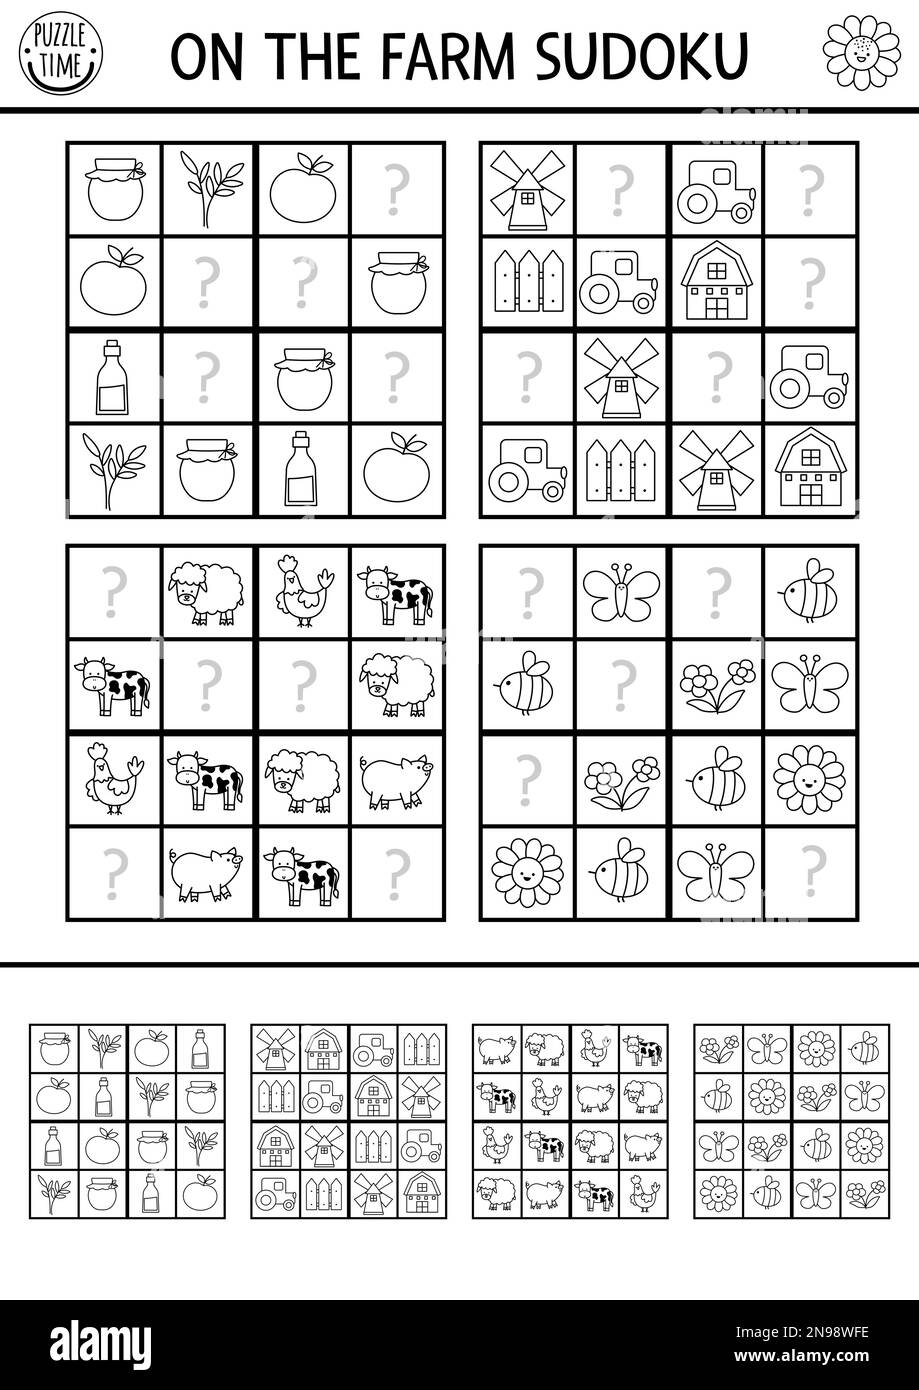 Puzzle noir et blanc de sudoku de la ferme vectorielle pour les enfants avec des photos. Quiz simple sur la ferme avec des éléments manquants. Activité d'éducation ou page de coloriage W Illustration de Vecteur